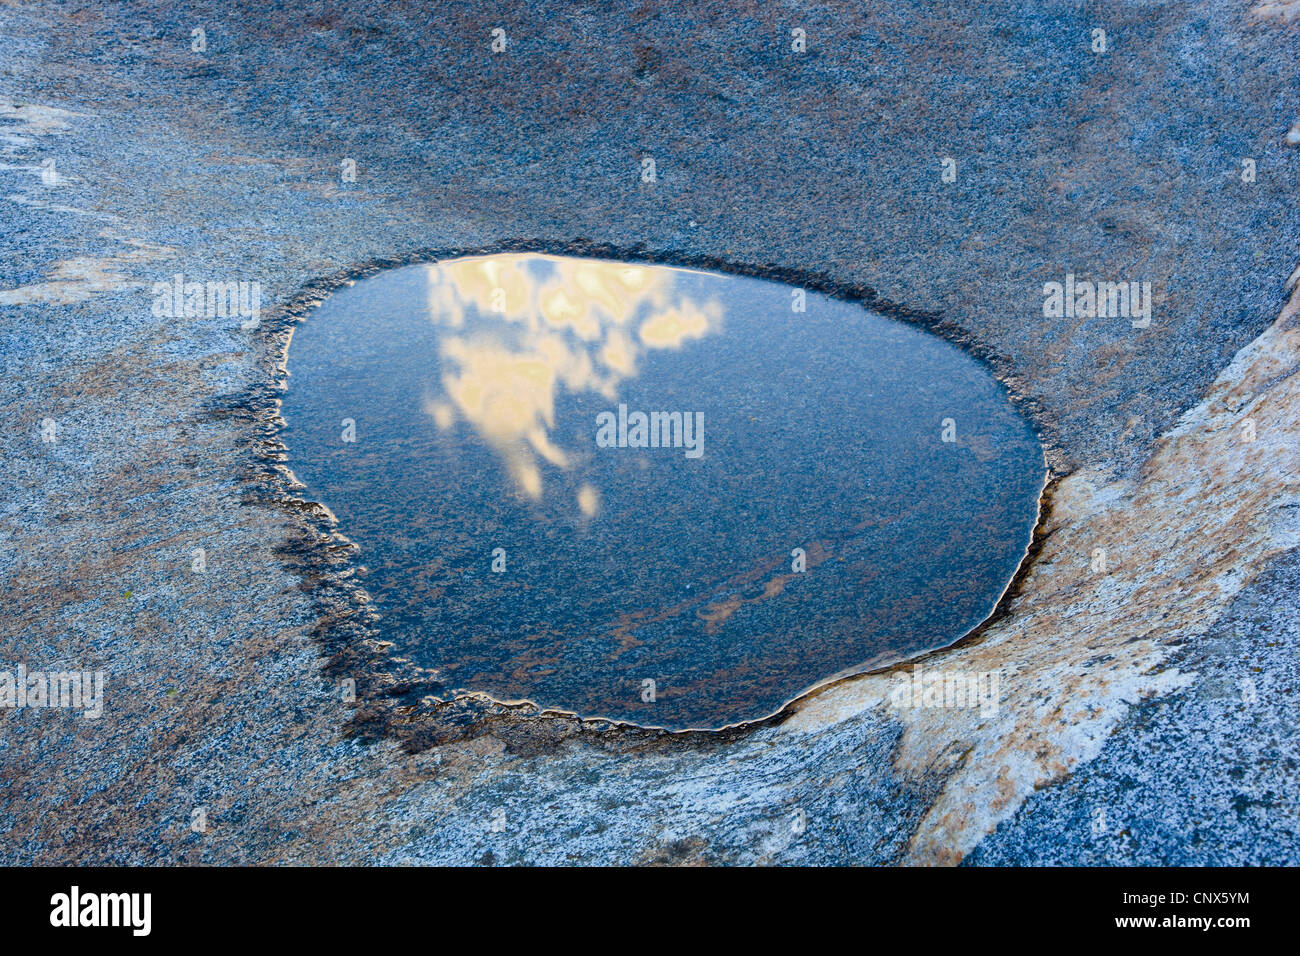 Charco con el reflejo del cielo en una roca en el río Verzasca corriendo a través del Valle de Verzasca, Suiza, Ticino, Verzascatal Foto de stock